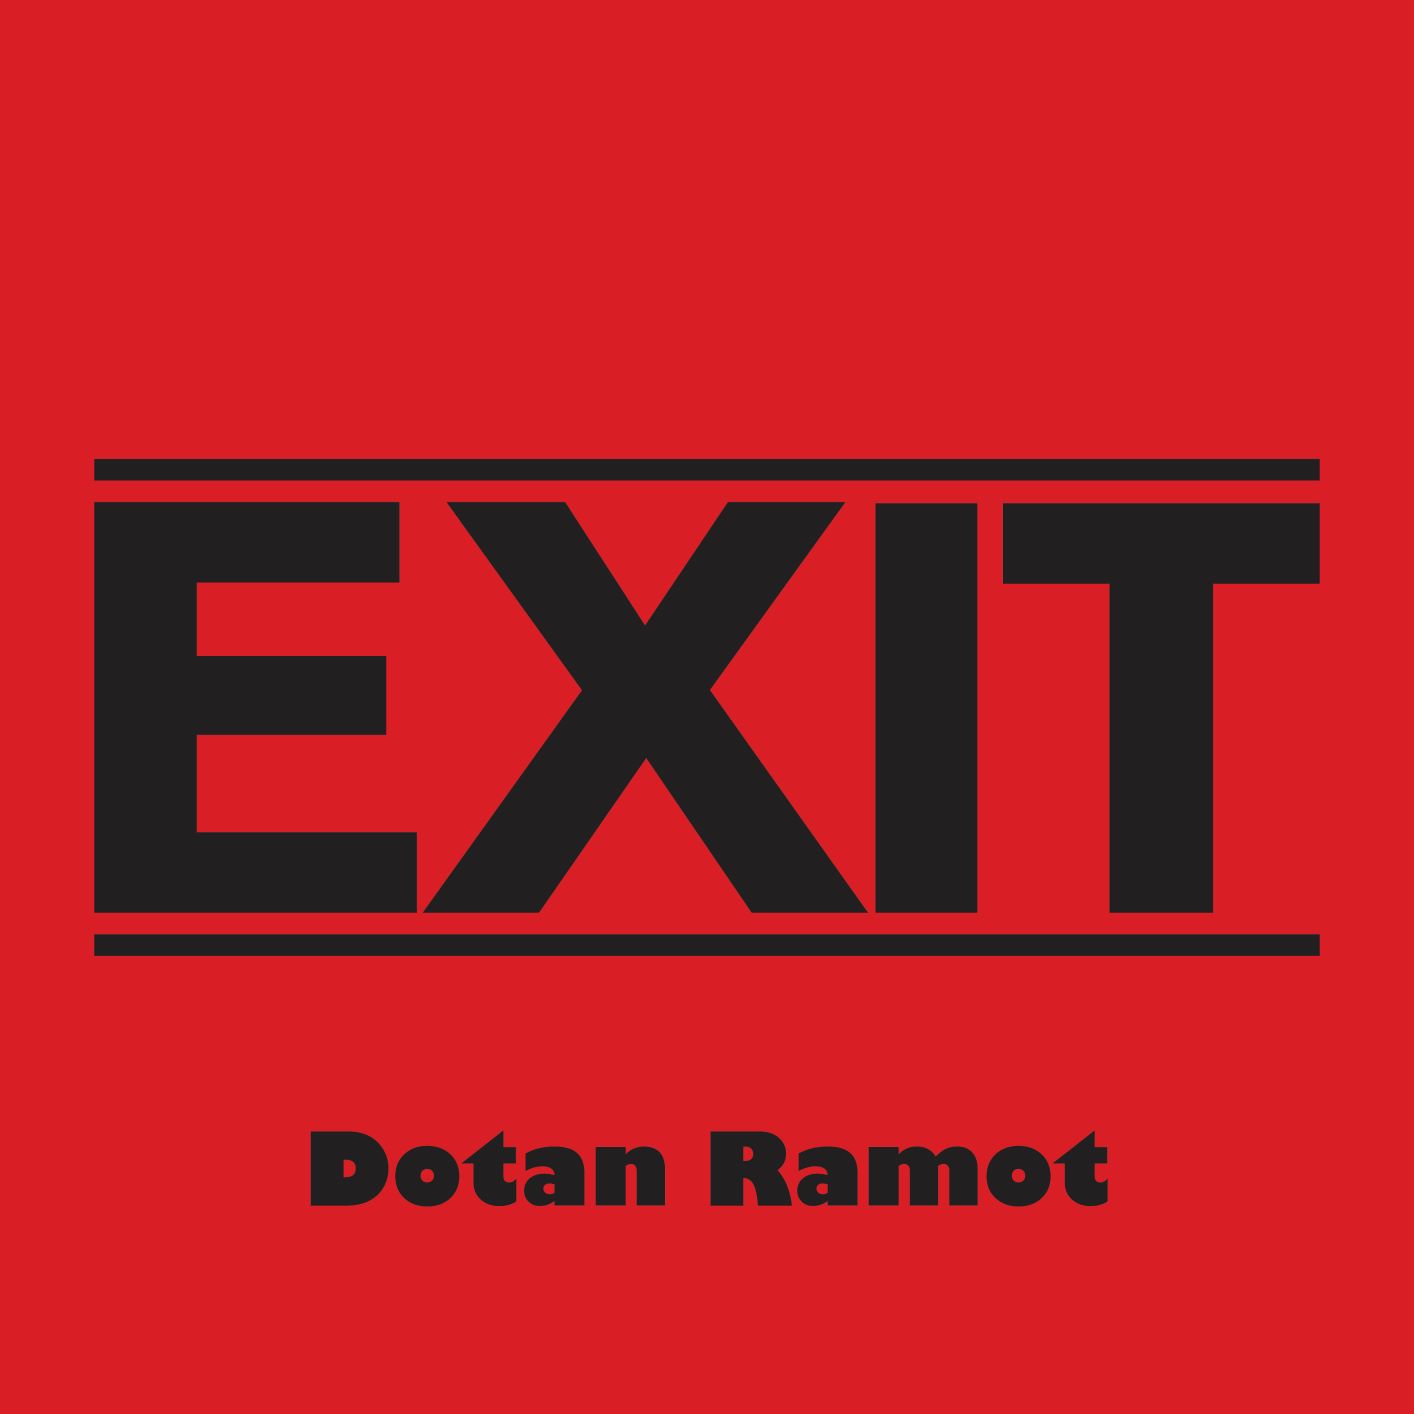 Dotan Ramot - Exit